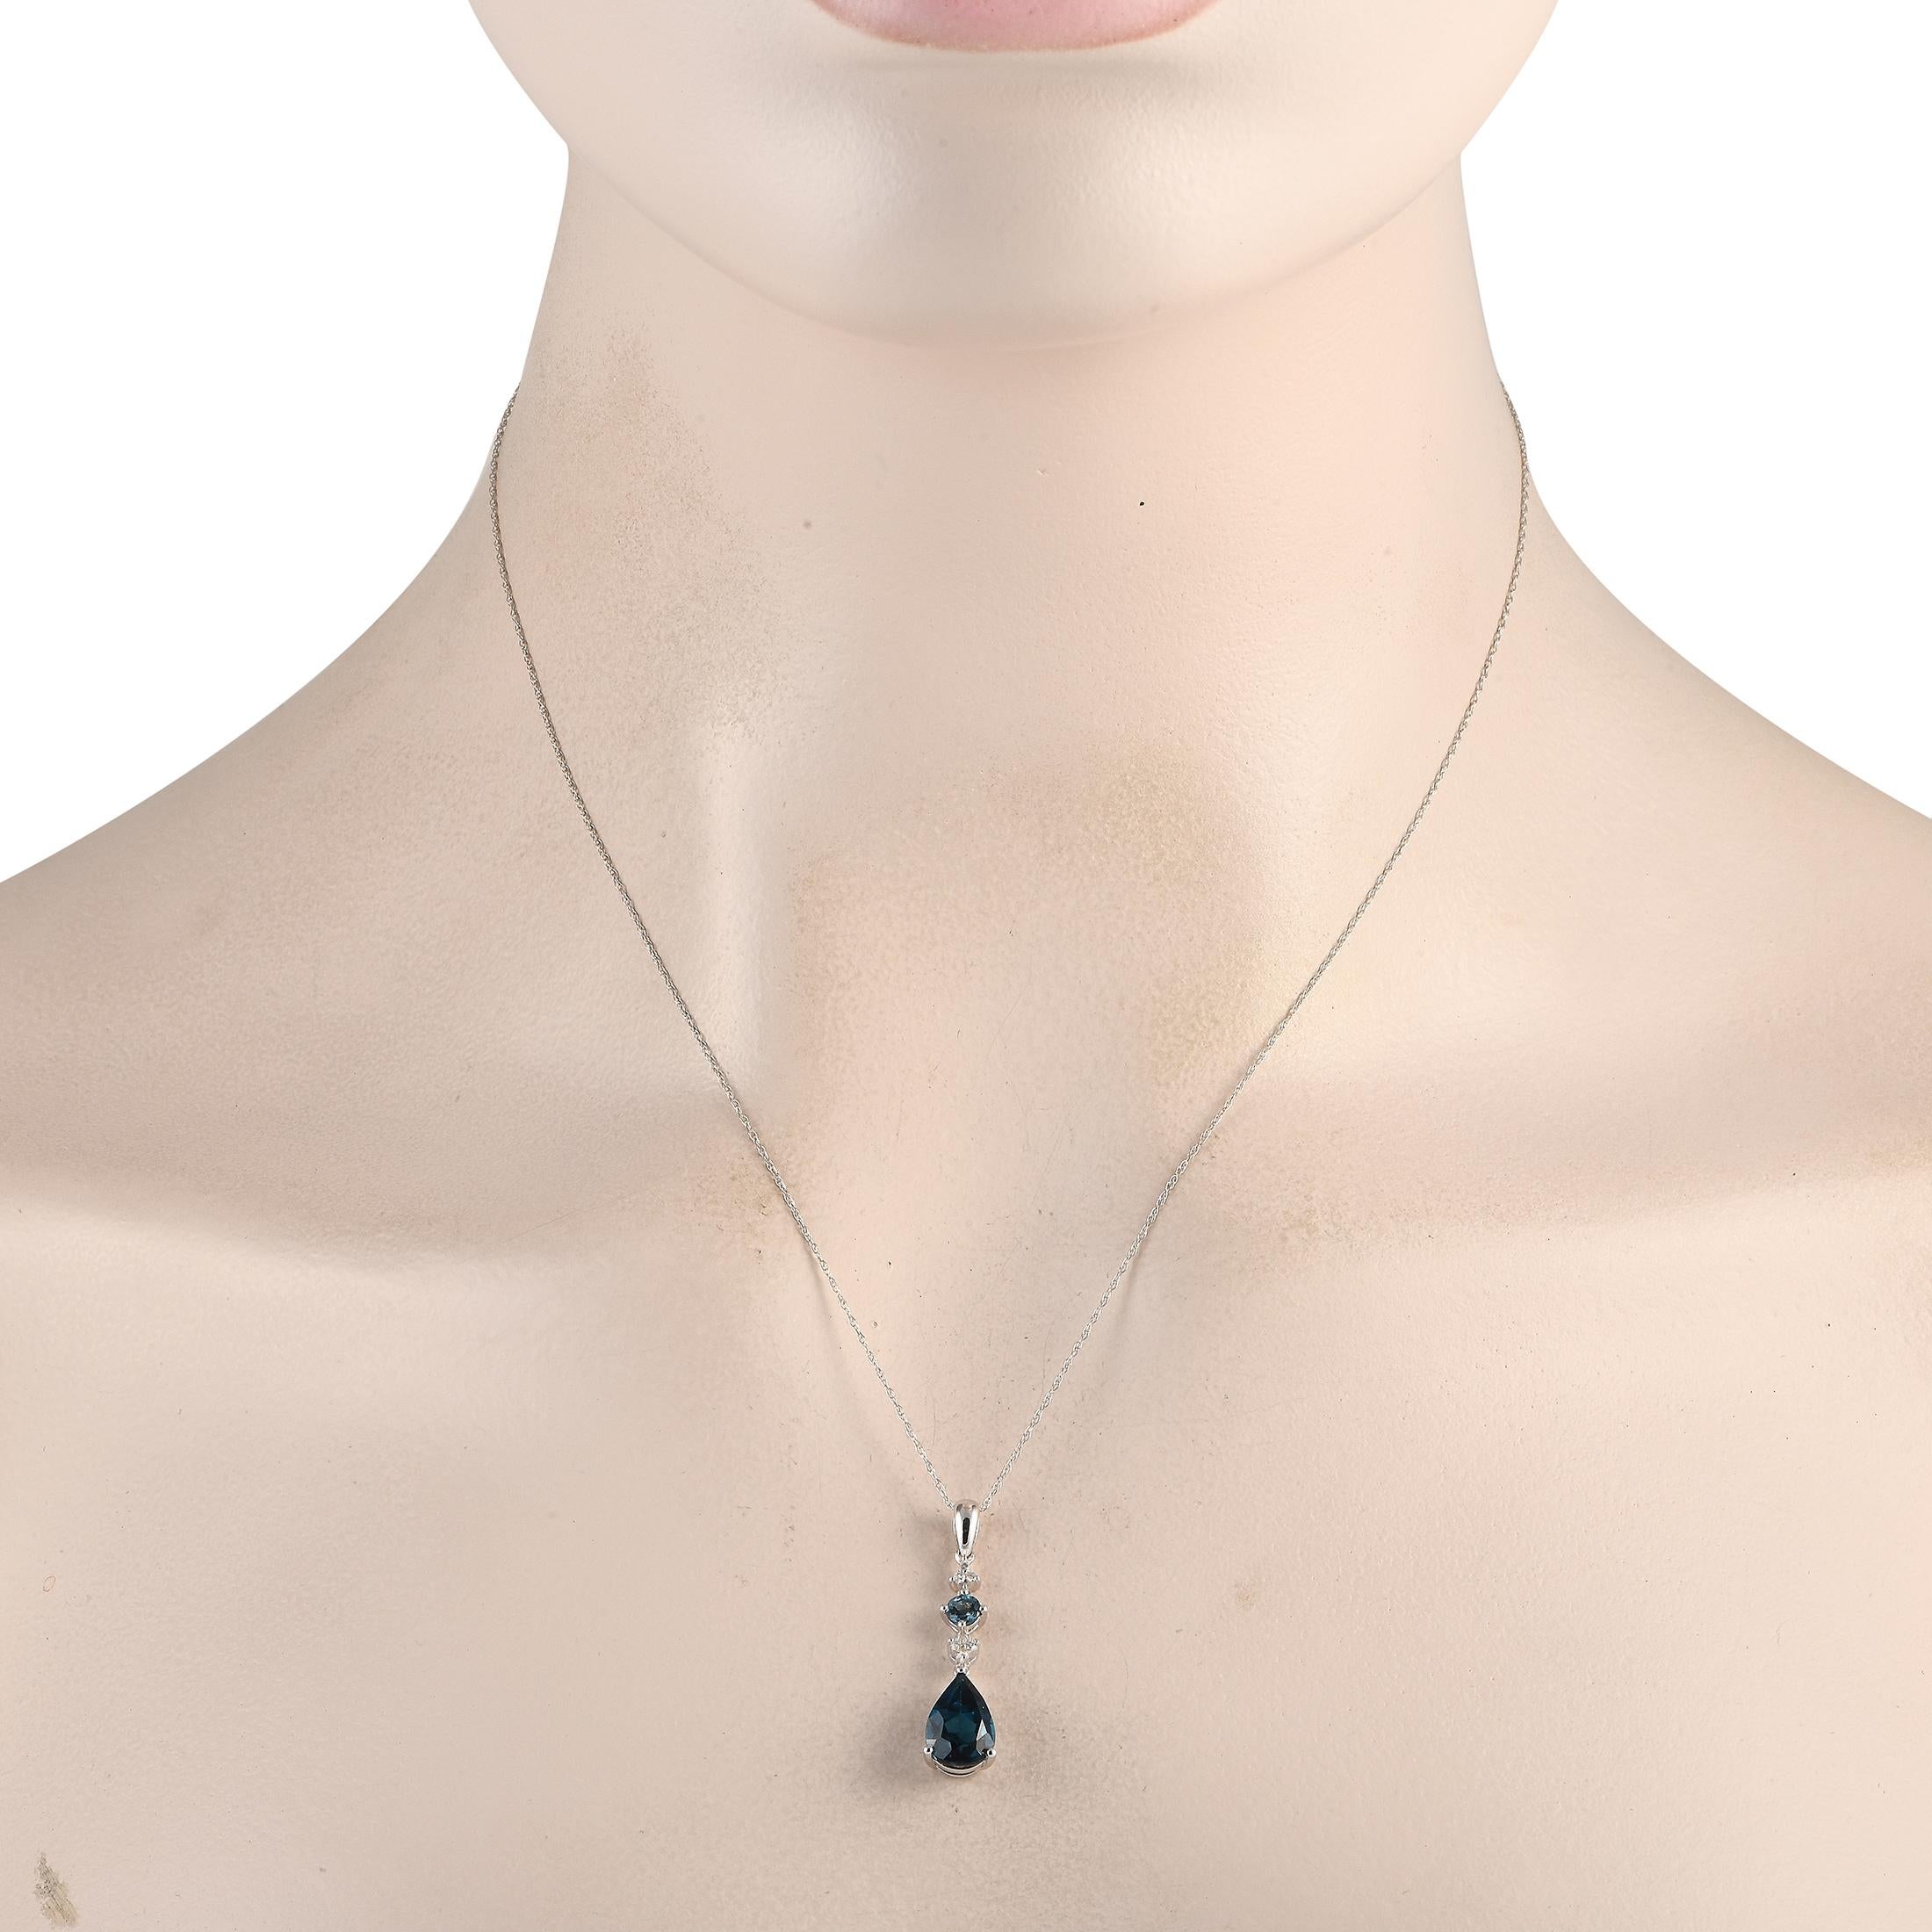 Tiefblaue Topas-Edelsteine dienen als atemberaubender Mittelpunkt dieser unglaublich schicken Halskette. An einer 18er Kette hängt ein dynamischer Anhänger, der dank funkelnder Diamanten von insgesamt 0,05 Karat zum Leben erwacht. Der Anhänger ist